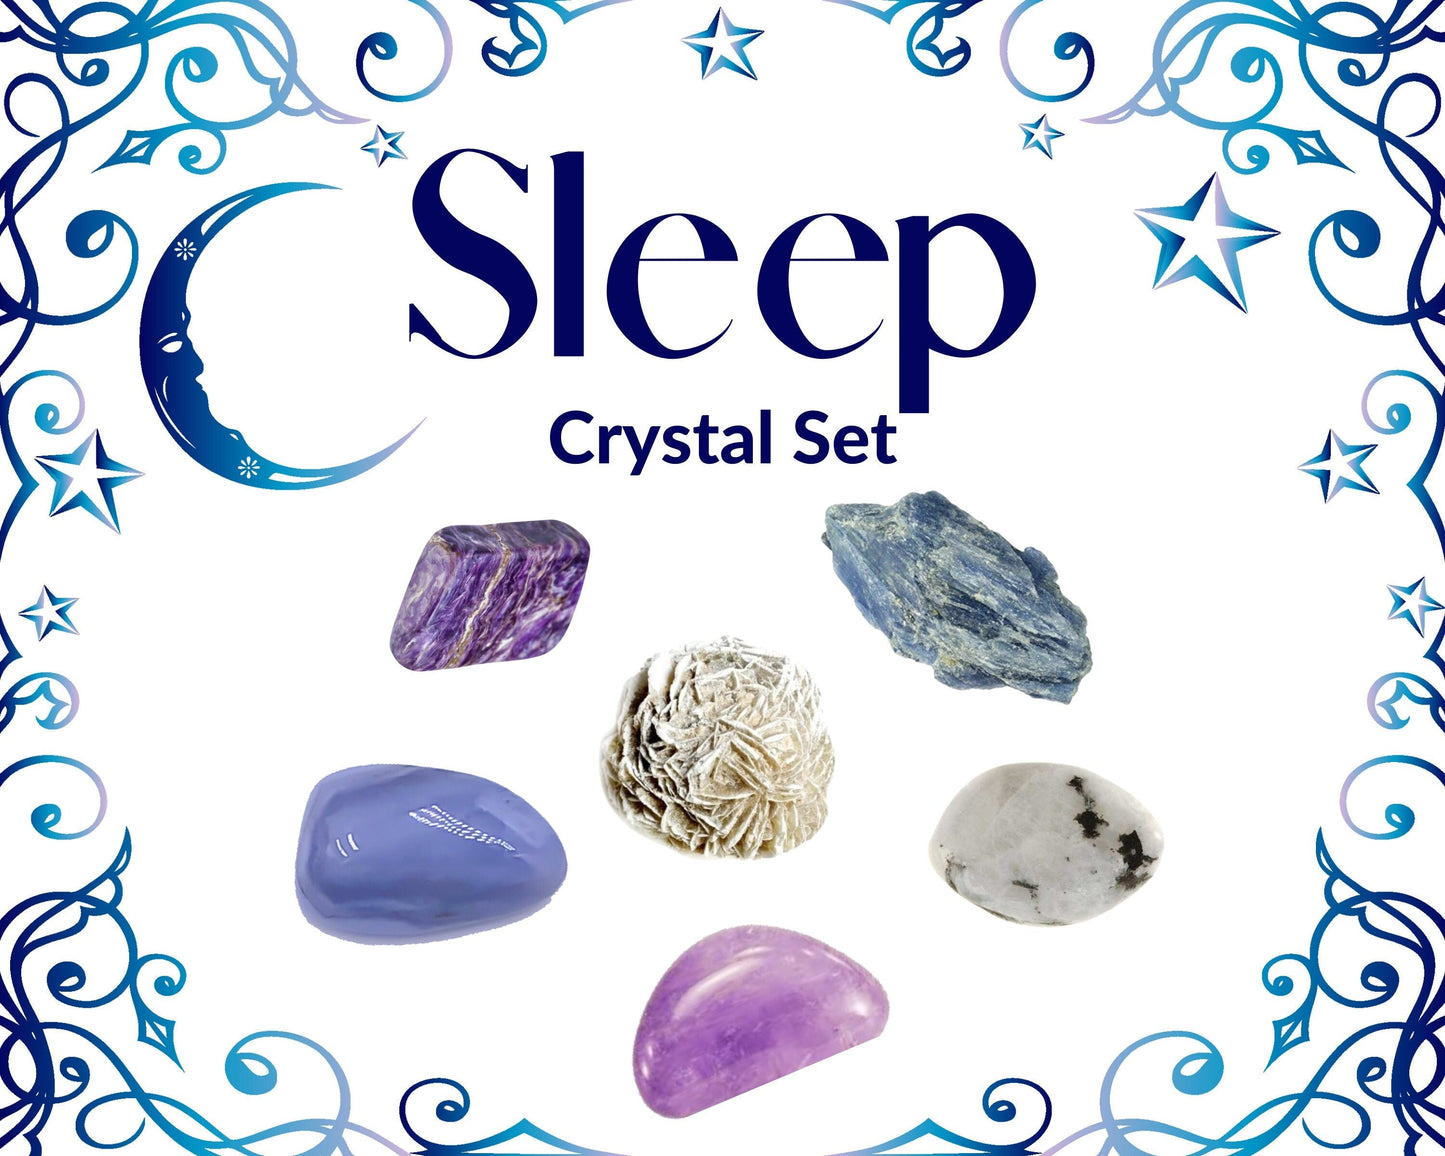 Crystals for Sleep